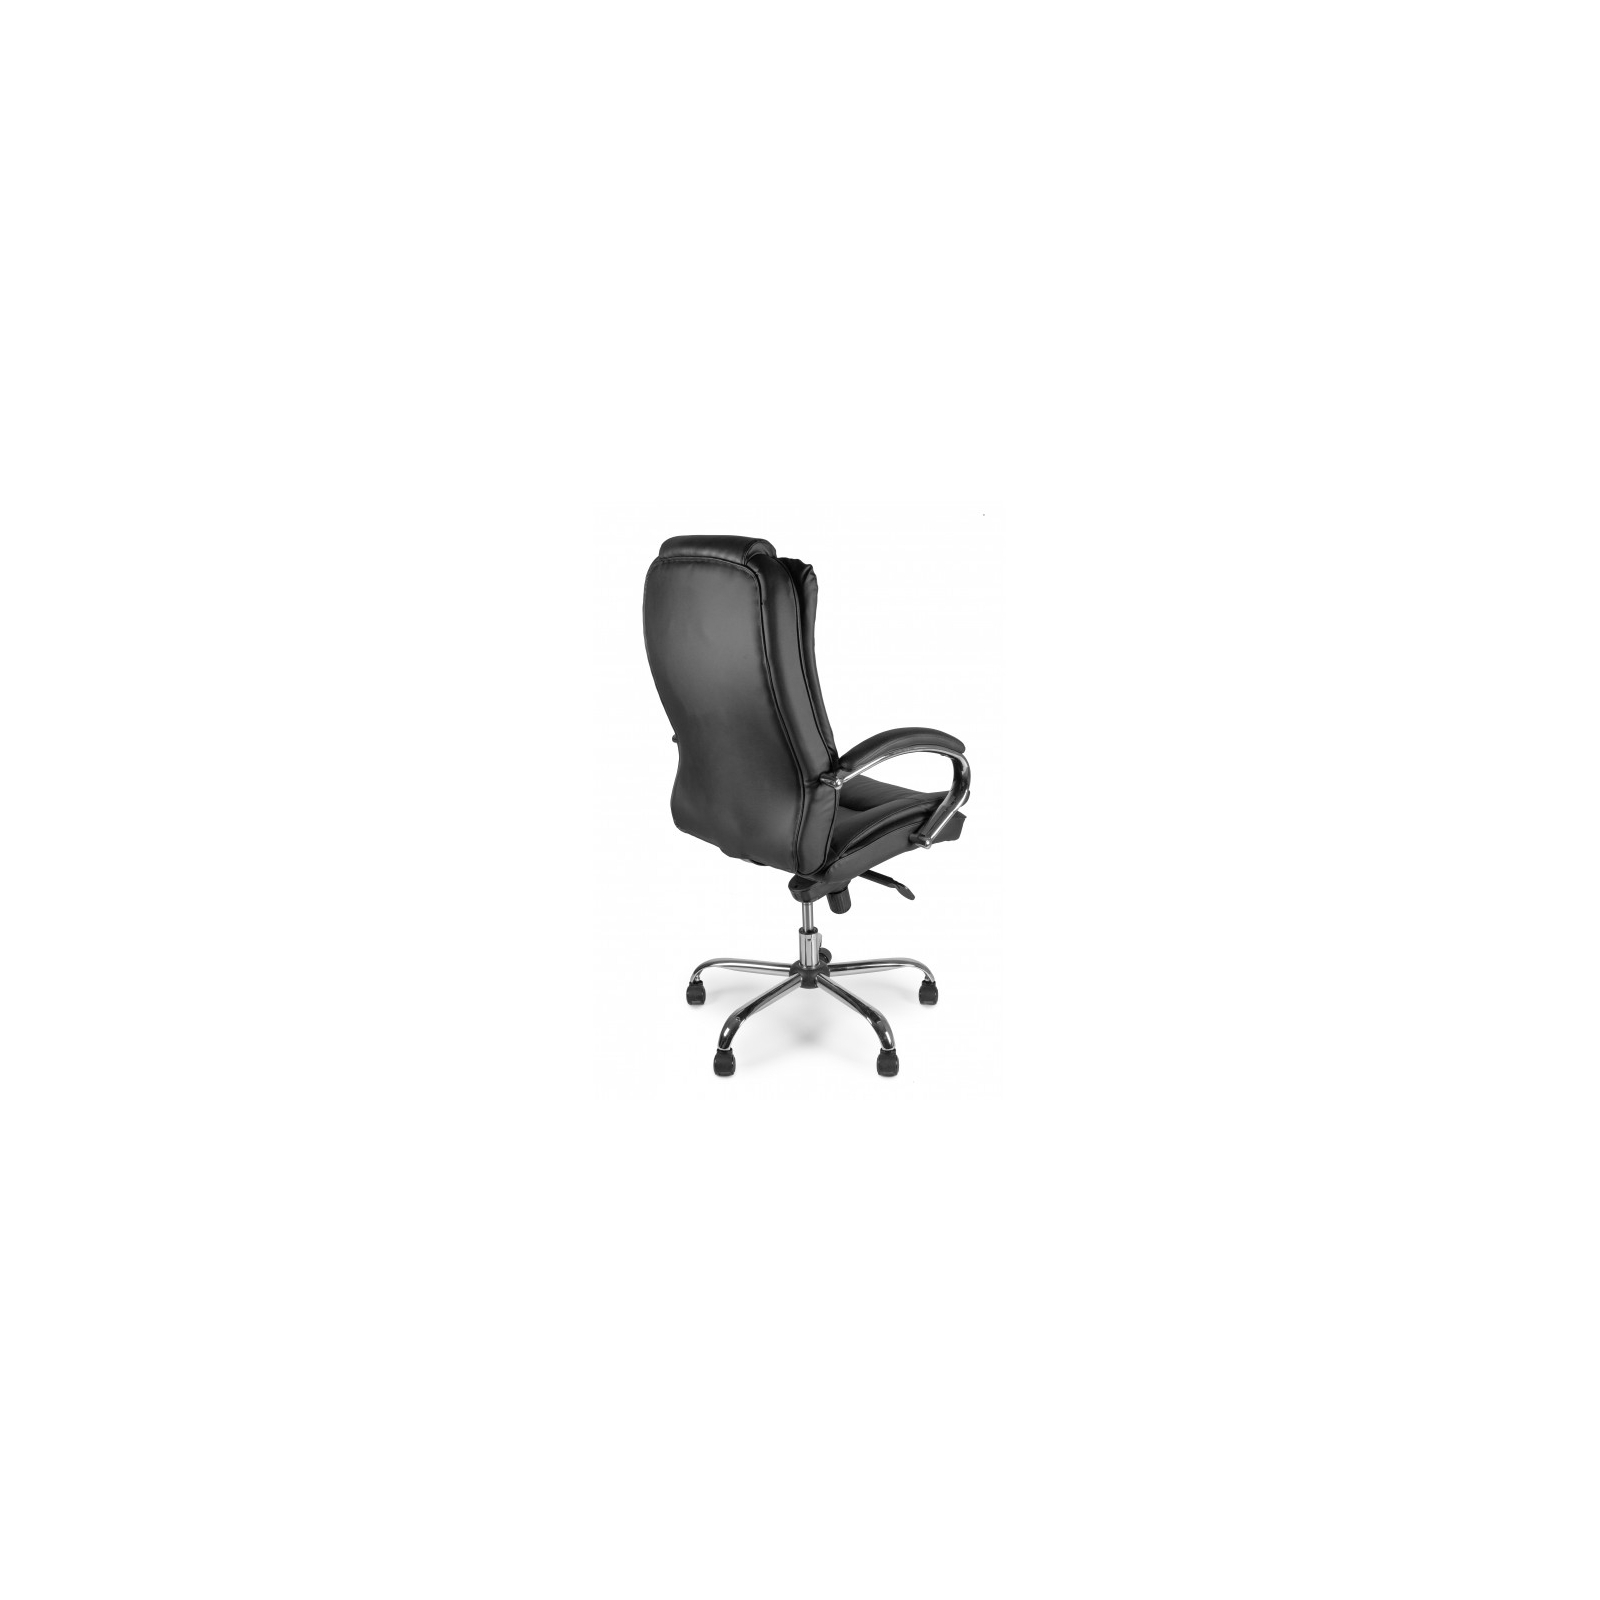 Офисное кресло Barsky Soft Leather MultiBlock Сhrom (Soft-05) изображение 6